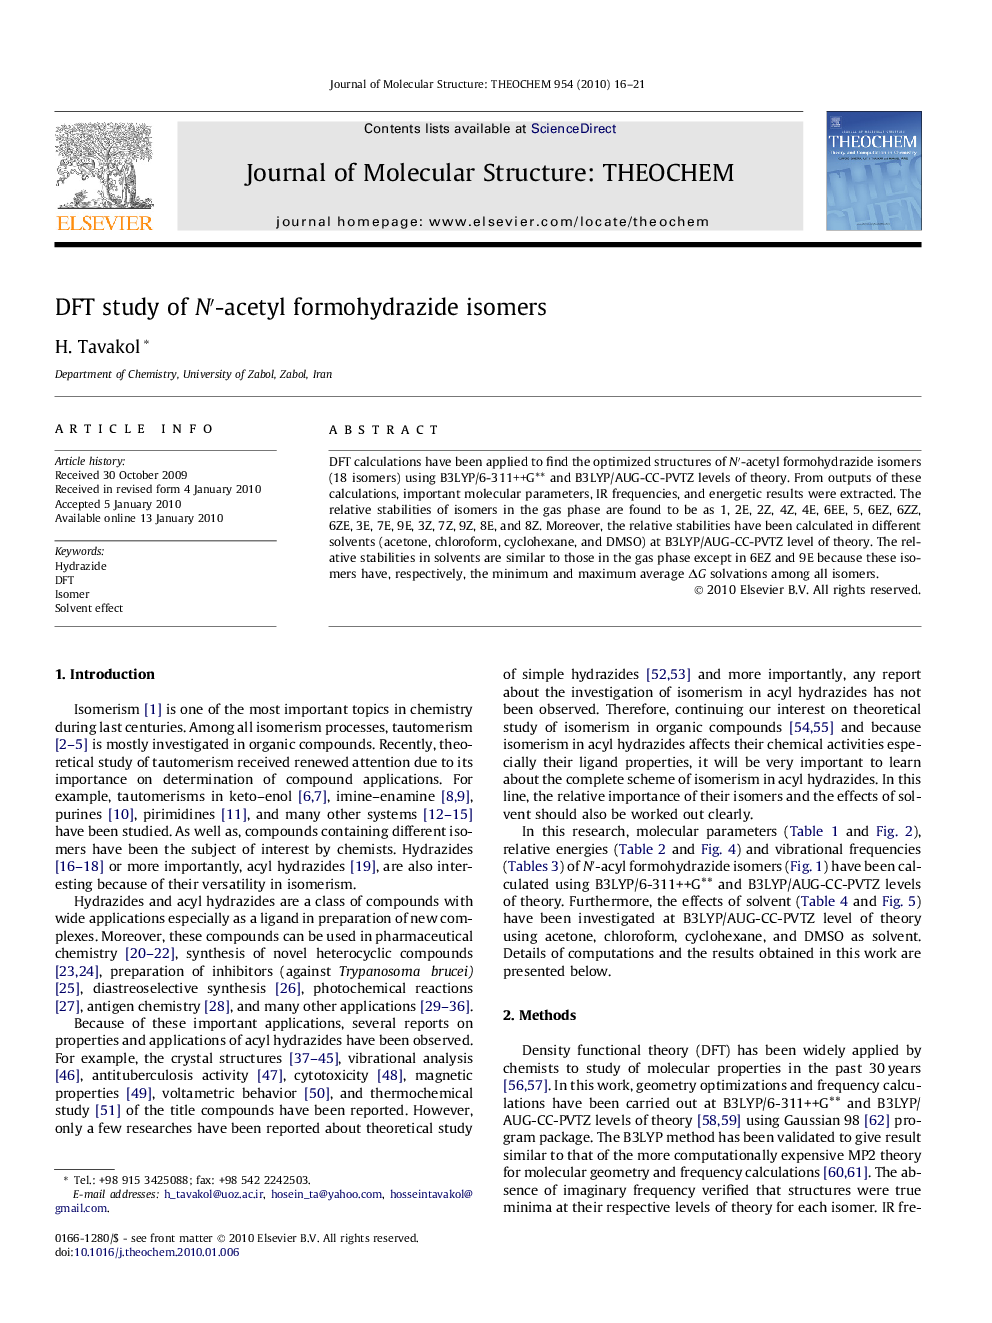 DFT study of Nâ²-acetyl formohydrazide isomers